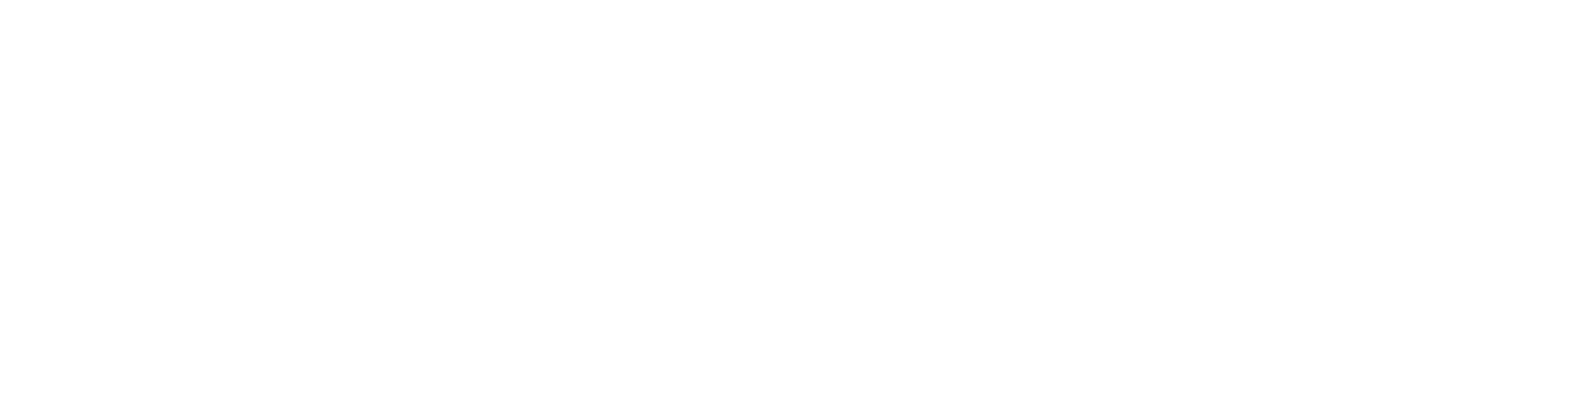 Xencor logo grand pour les fonds sombres (PNG transparent)